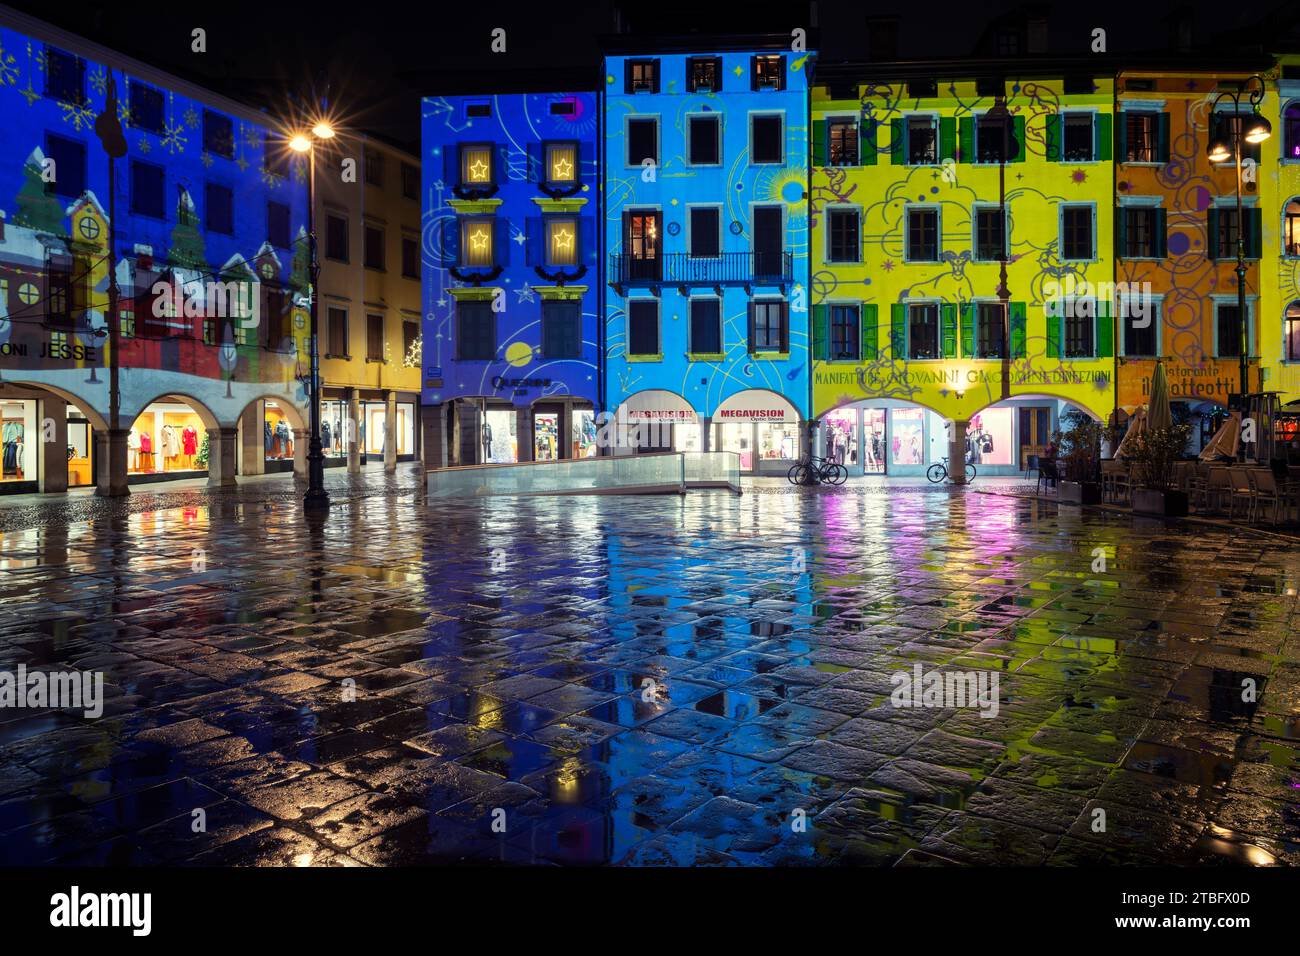 Weihnachtsdekoration und Beleuchtung auf einem italienischen Platz. Häuser der piazza San Giacomo mit bunten Lichtern bemalt. Udine, Friaul-Julisch Venetien. Stockfoto